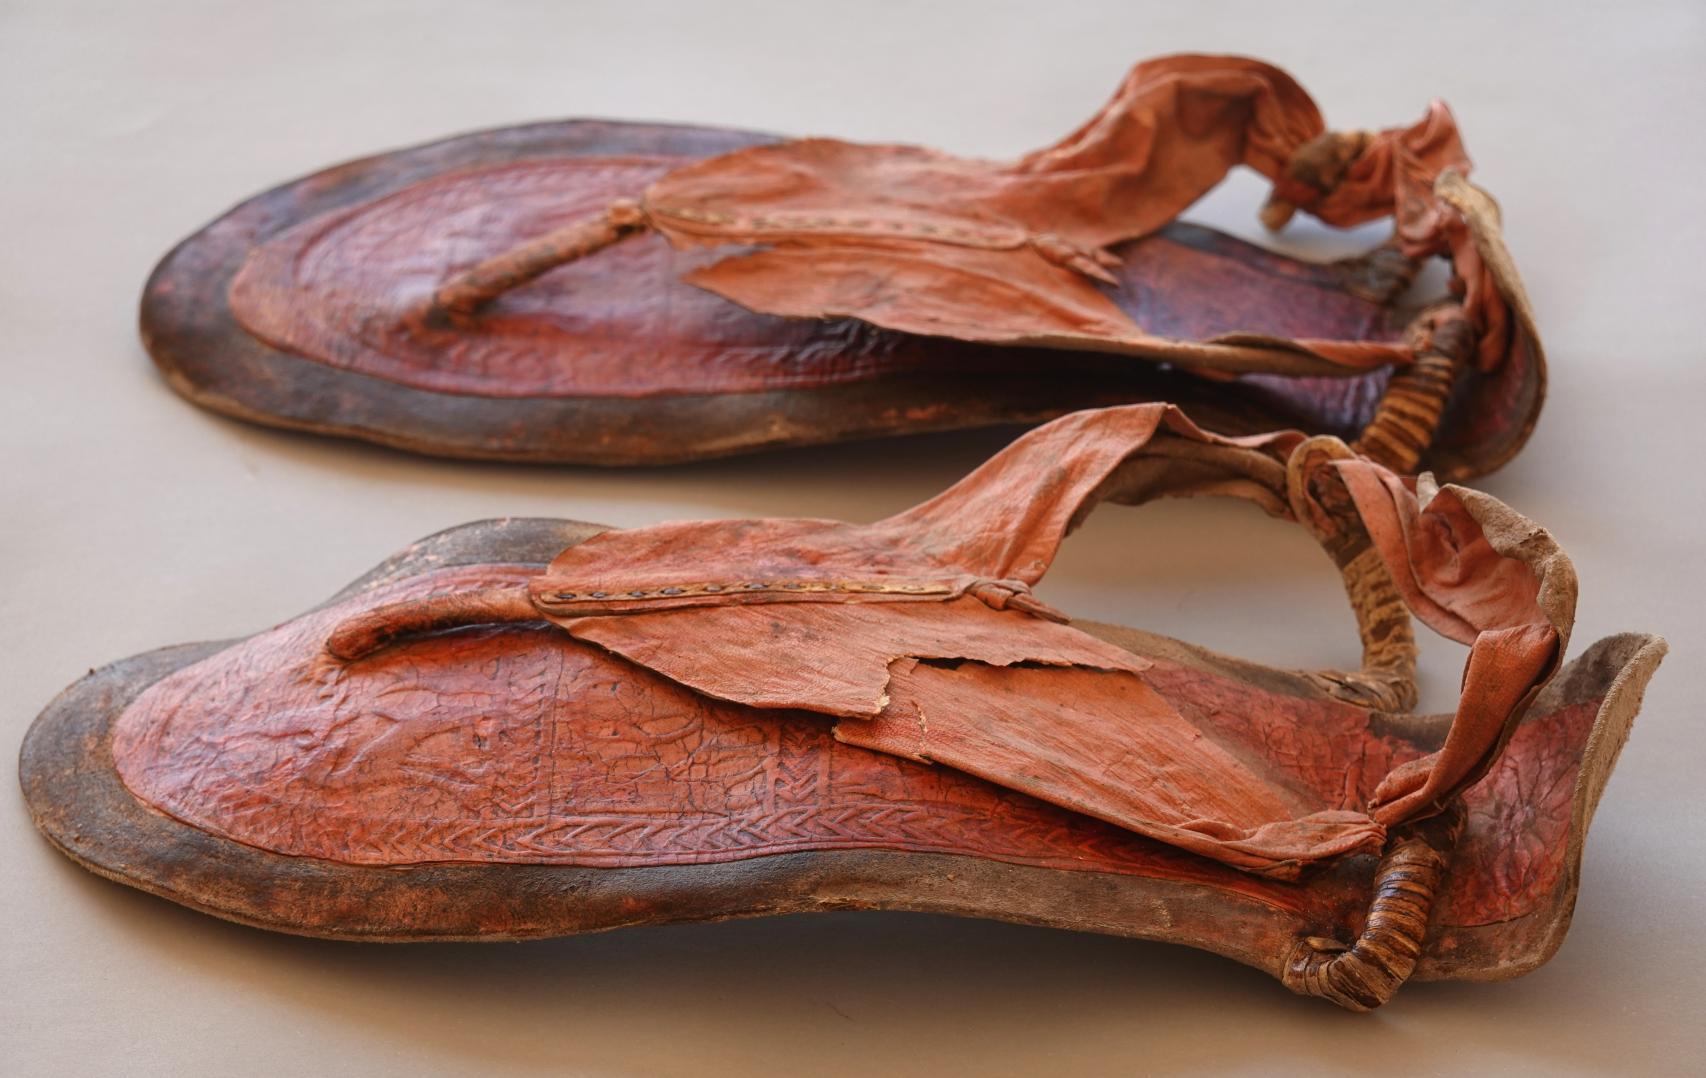 Imagen de las sandalias de cuero descubiertas.